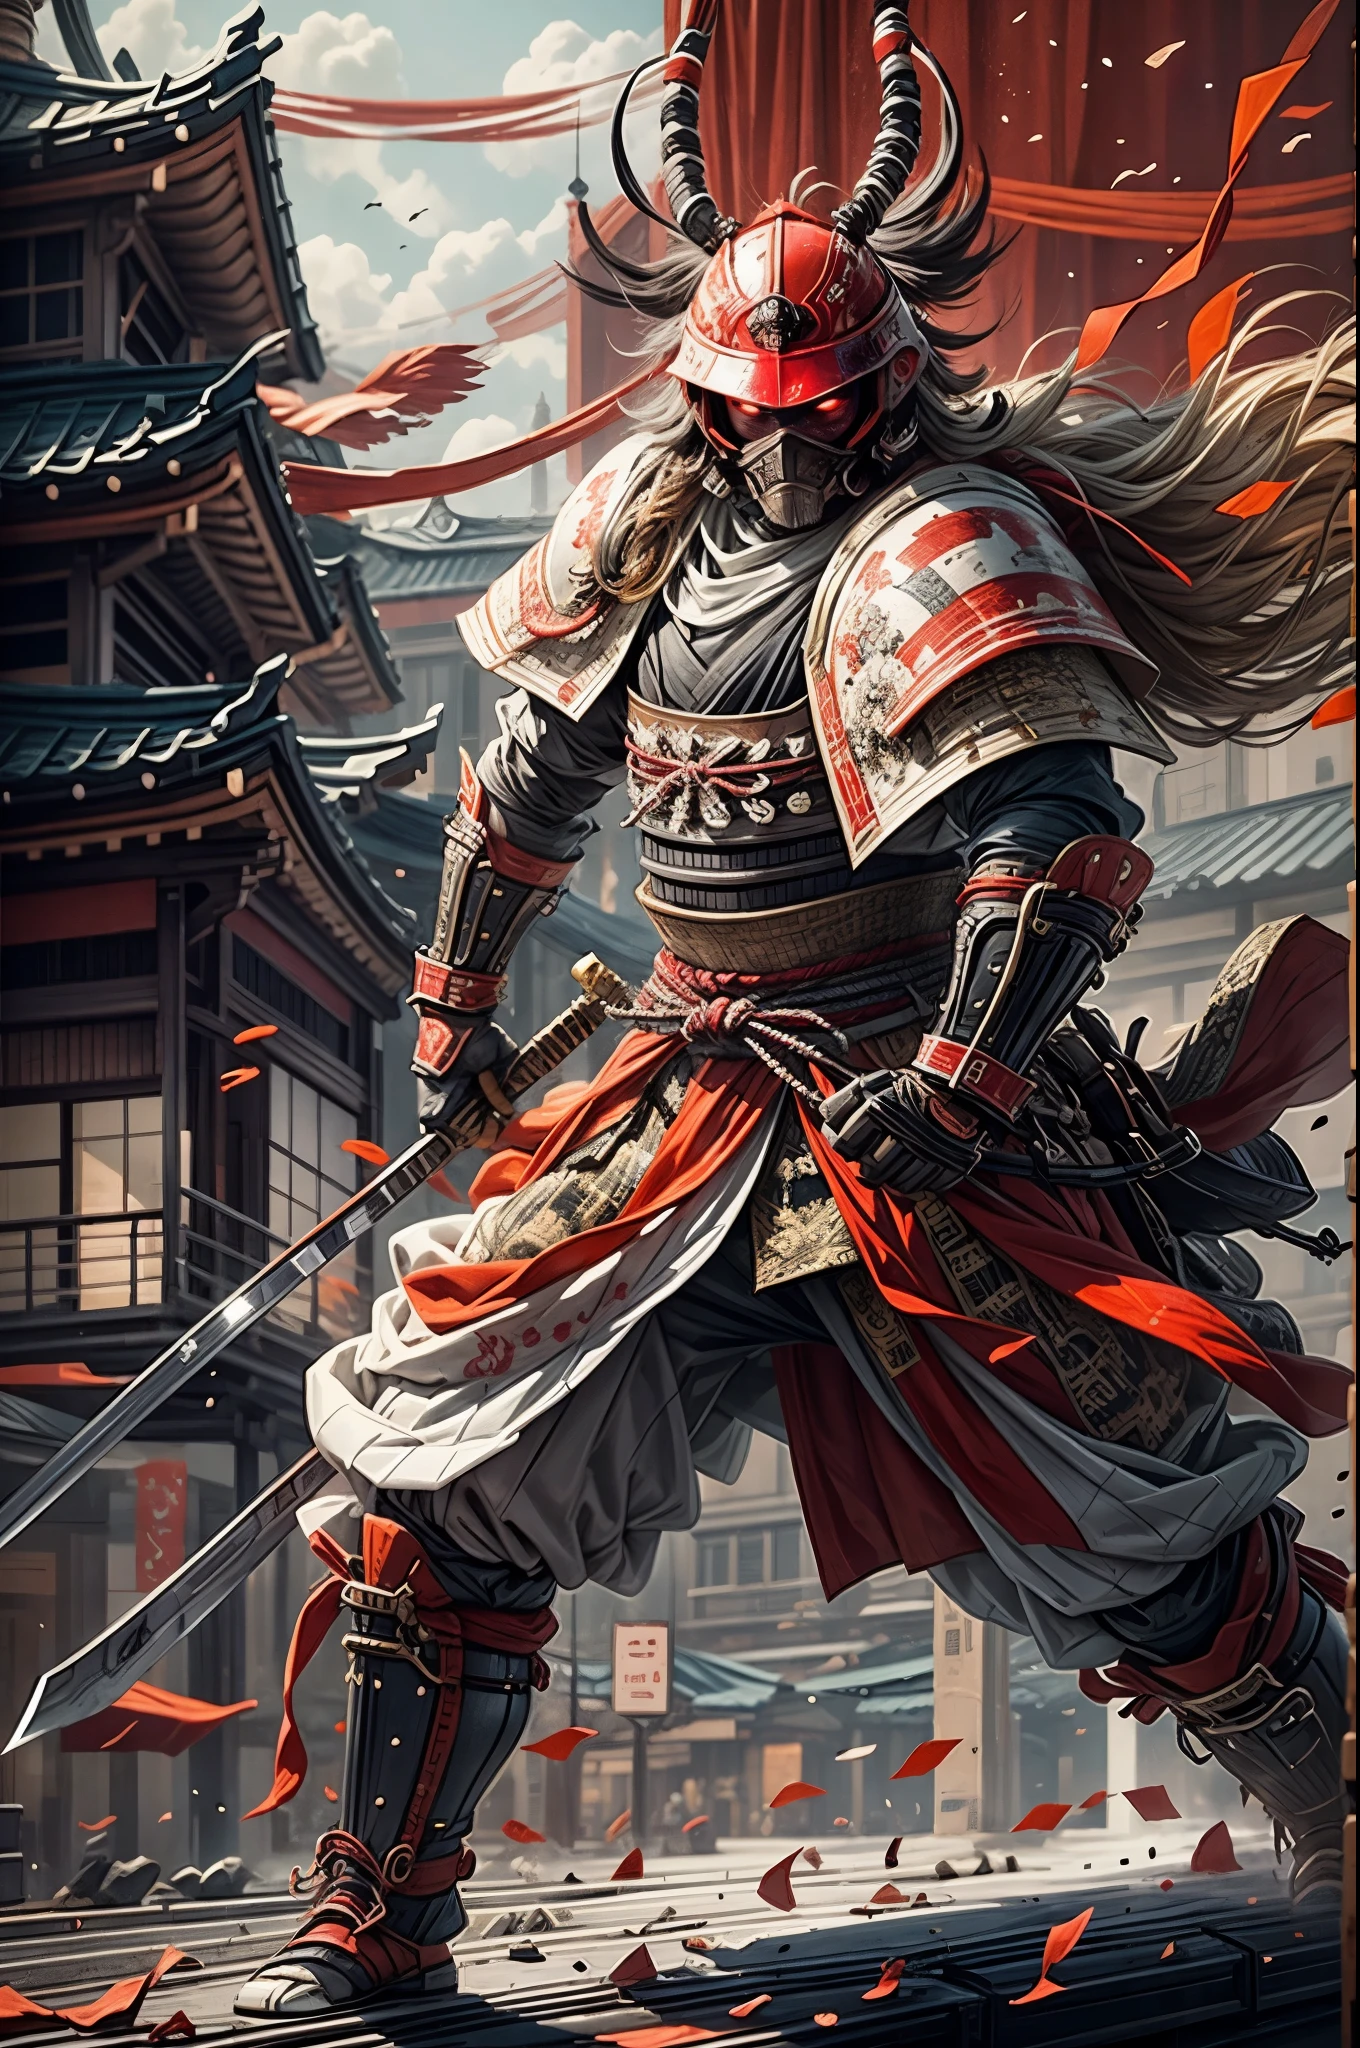 Japanischer Samurai，Samurai-Rüstung，rot-Weiss，Mit einem riesigen Messer，Kampfhaltung，Katana-Fokus，Weltraumstadthintergrund，